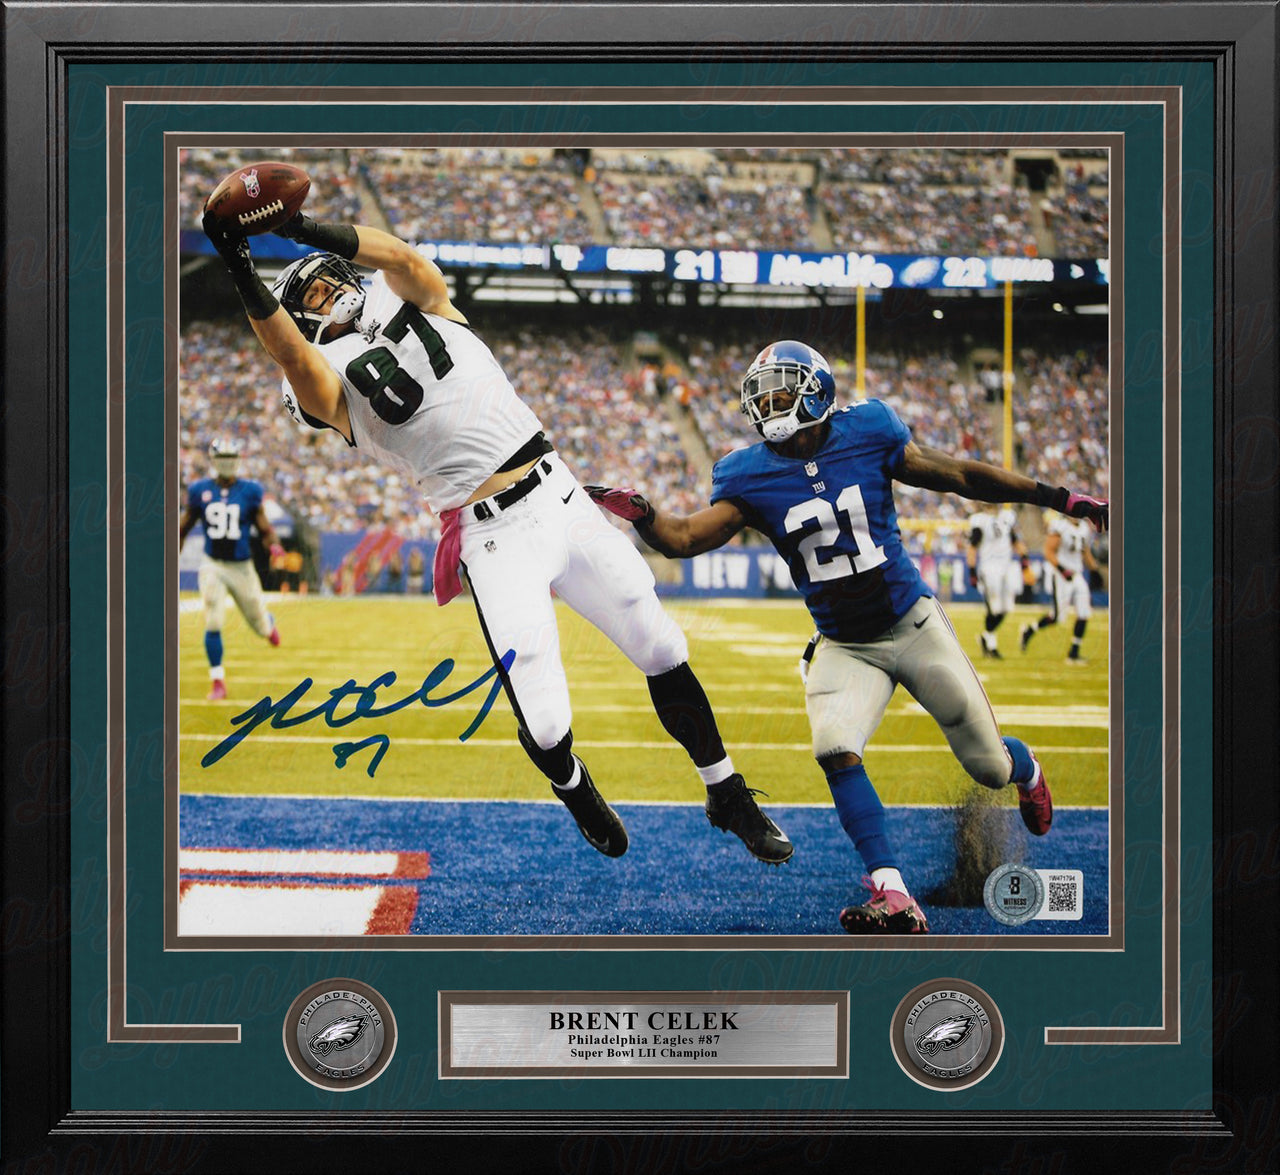 Brent Celek Touchdown v. Giants Philadelphia Eagles Autographed 16" x 20" Framed Football Photo